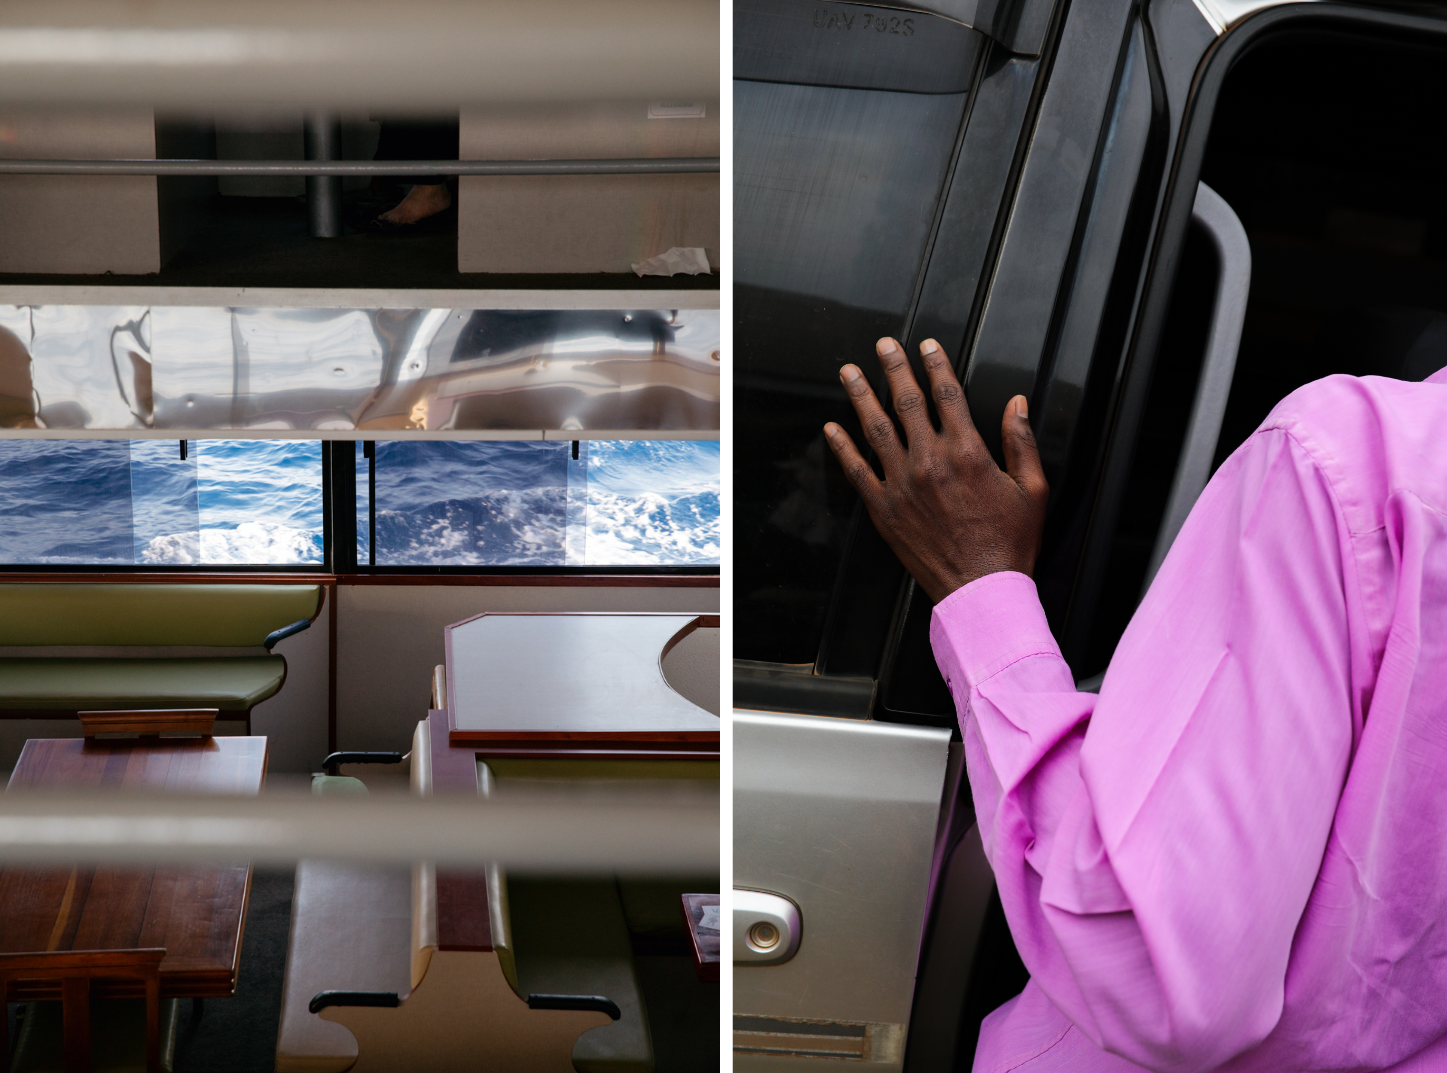 Fotografie links: kleiner Ausschnitt aus dem Innenraum eines Schiffs, man sieht Wasser, Fotografie rechts: Detailaufnahme eines Menschen von hinten mit dunkler Haut und einem pinken Hemd, die Hand ist abgelegt